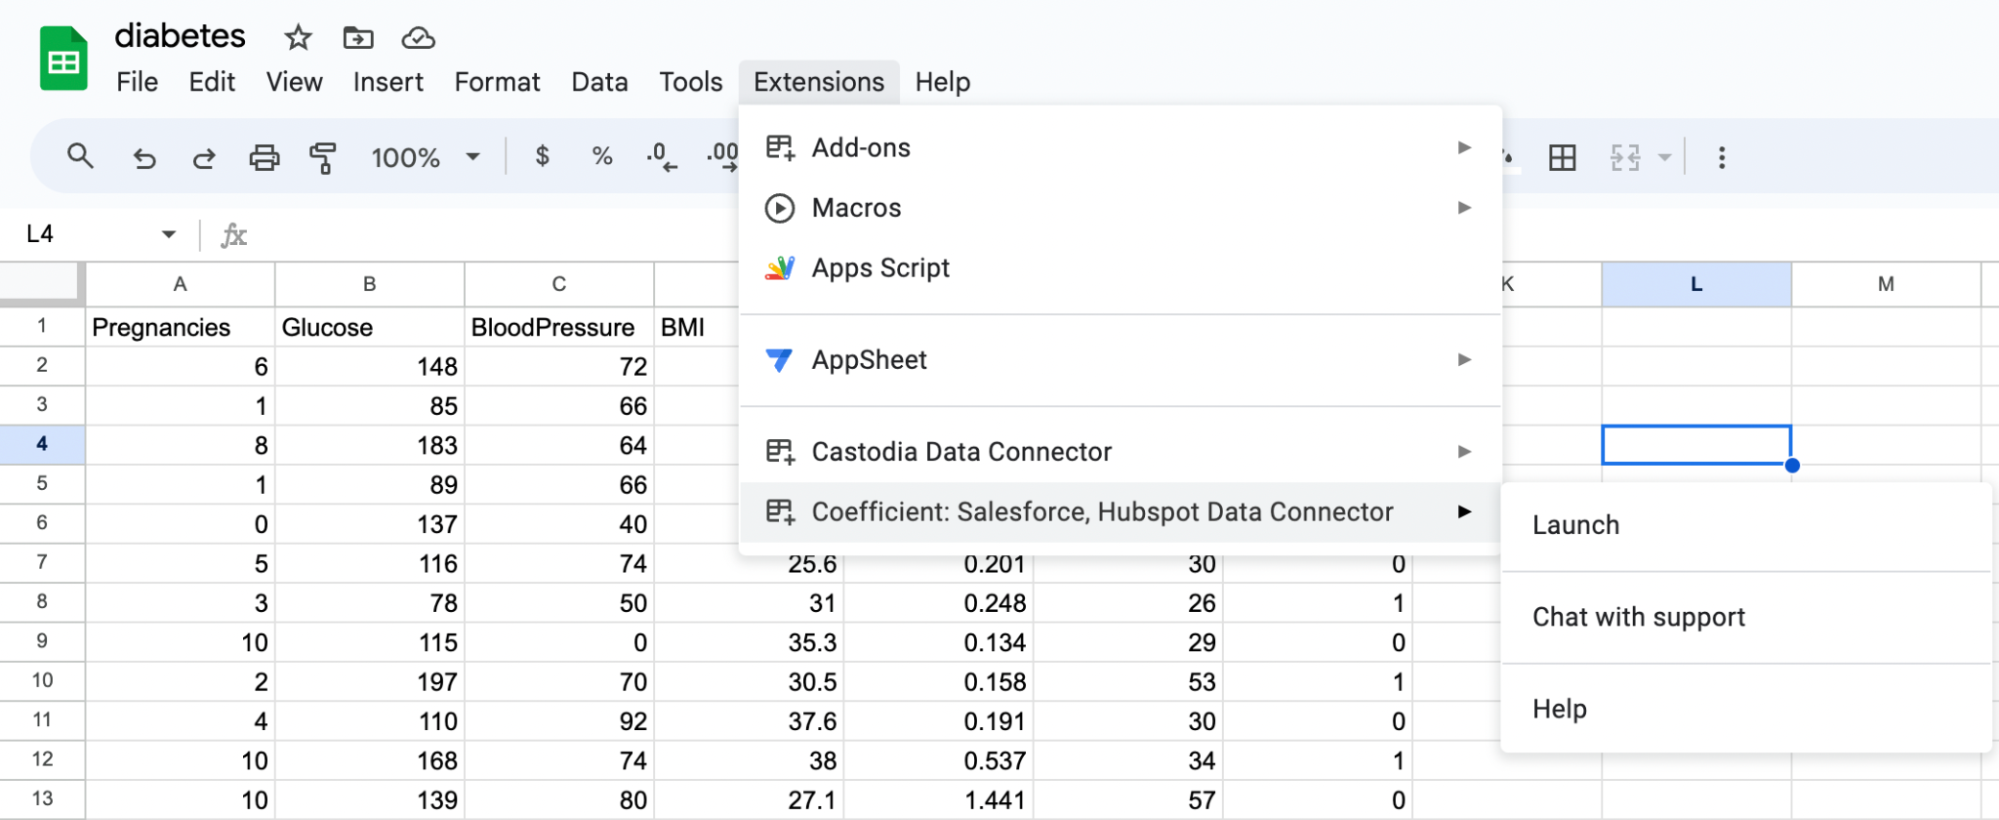 El menú Extensiones muestra el elemento Coefficient Salesforce, Hubspot Data Connector con las opciones Lanzamiento, Chat con soporte y Ayuda.